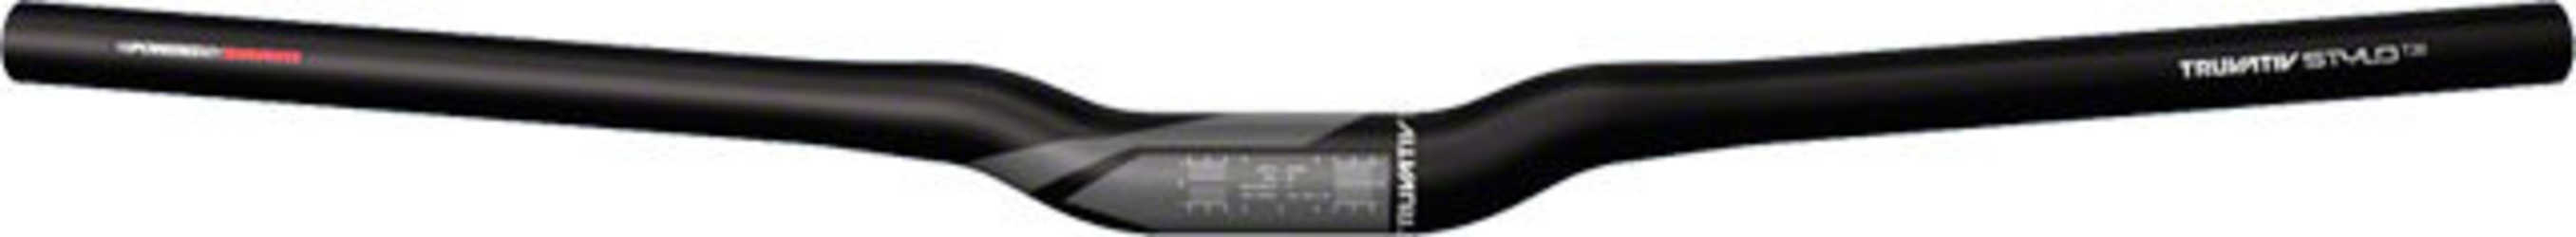 Styre Truvativ Stylo T20 Riser 20 31.8 mm 680 mm svart från Truvativ